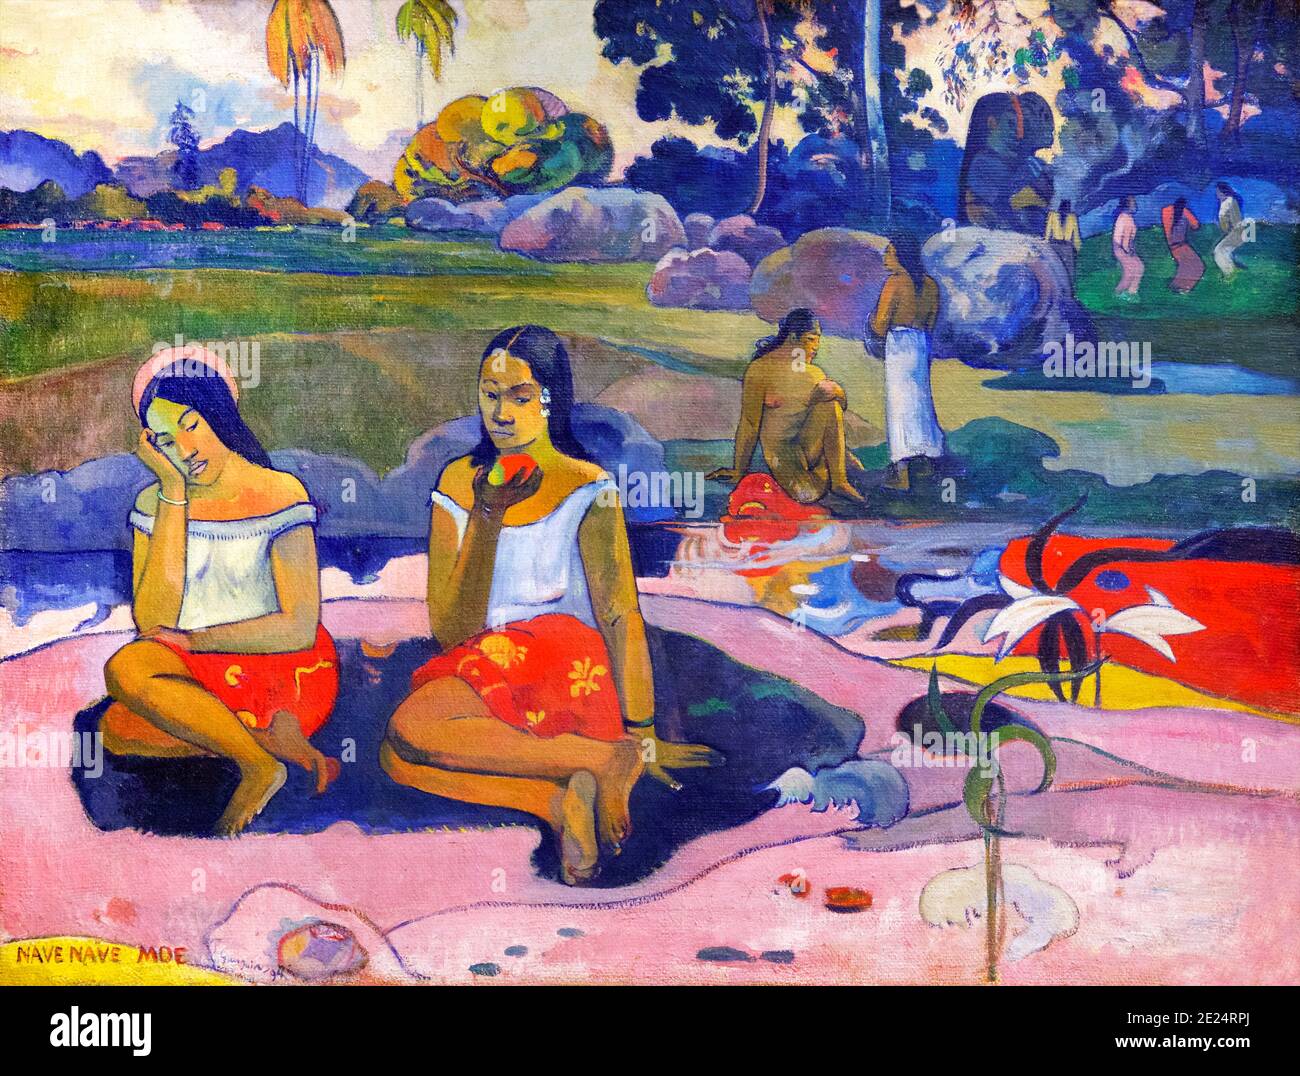 Nef Nave Moe, Sacred Spring, Sweet Dreams, Paul Gauguin, 1894, Musée de l'Ermitage, Saint-Pétersbourg, Russie Banque D'Images